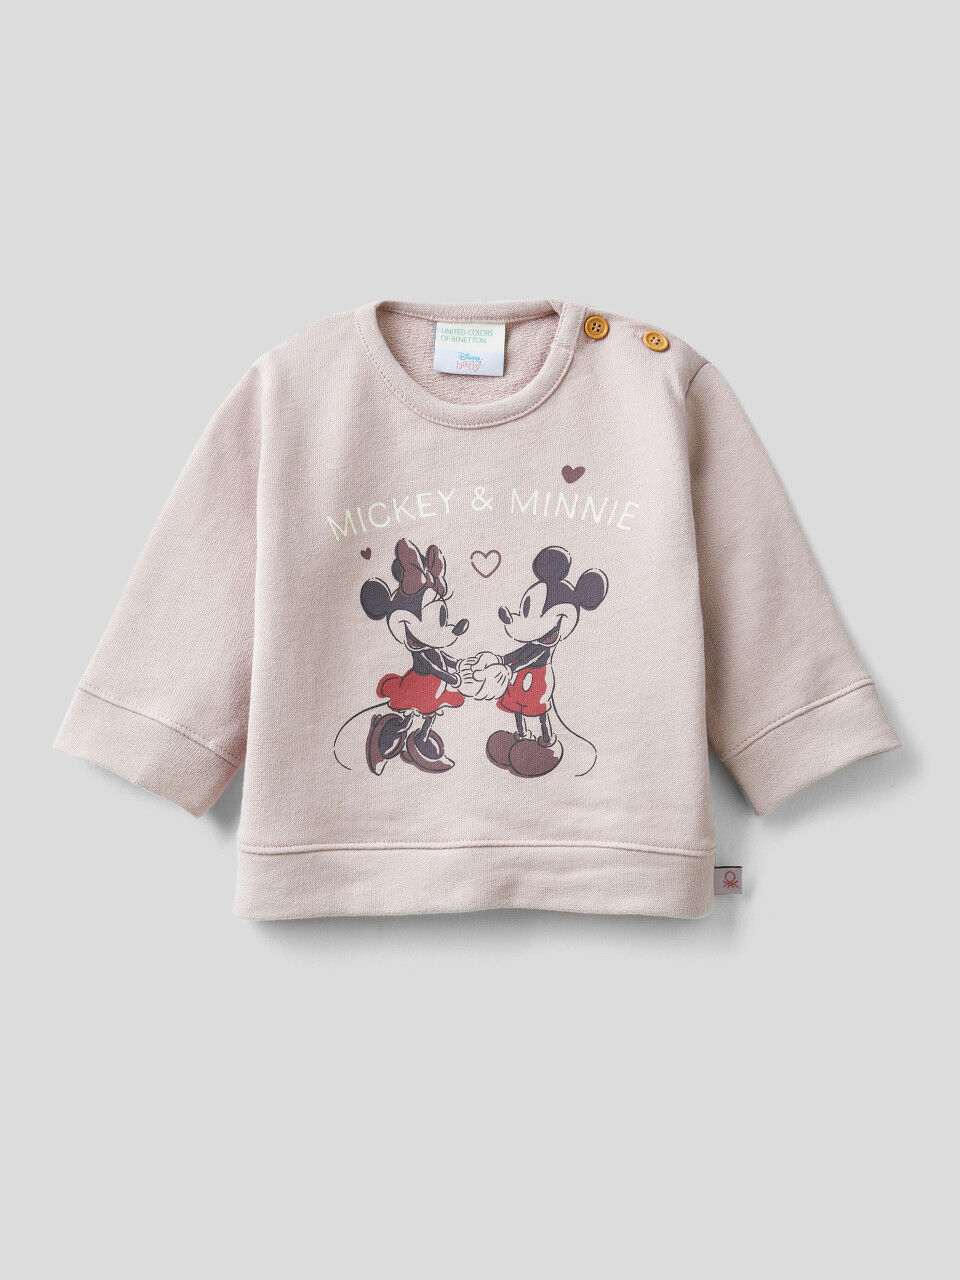 Mickey & Friends sweatshirt in 100% cotton